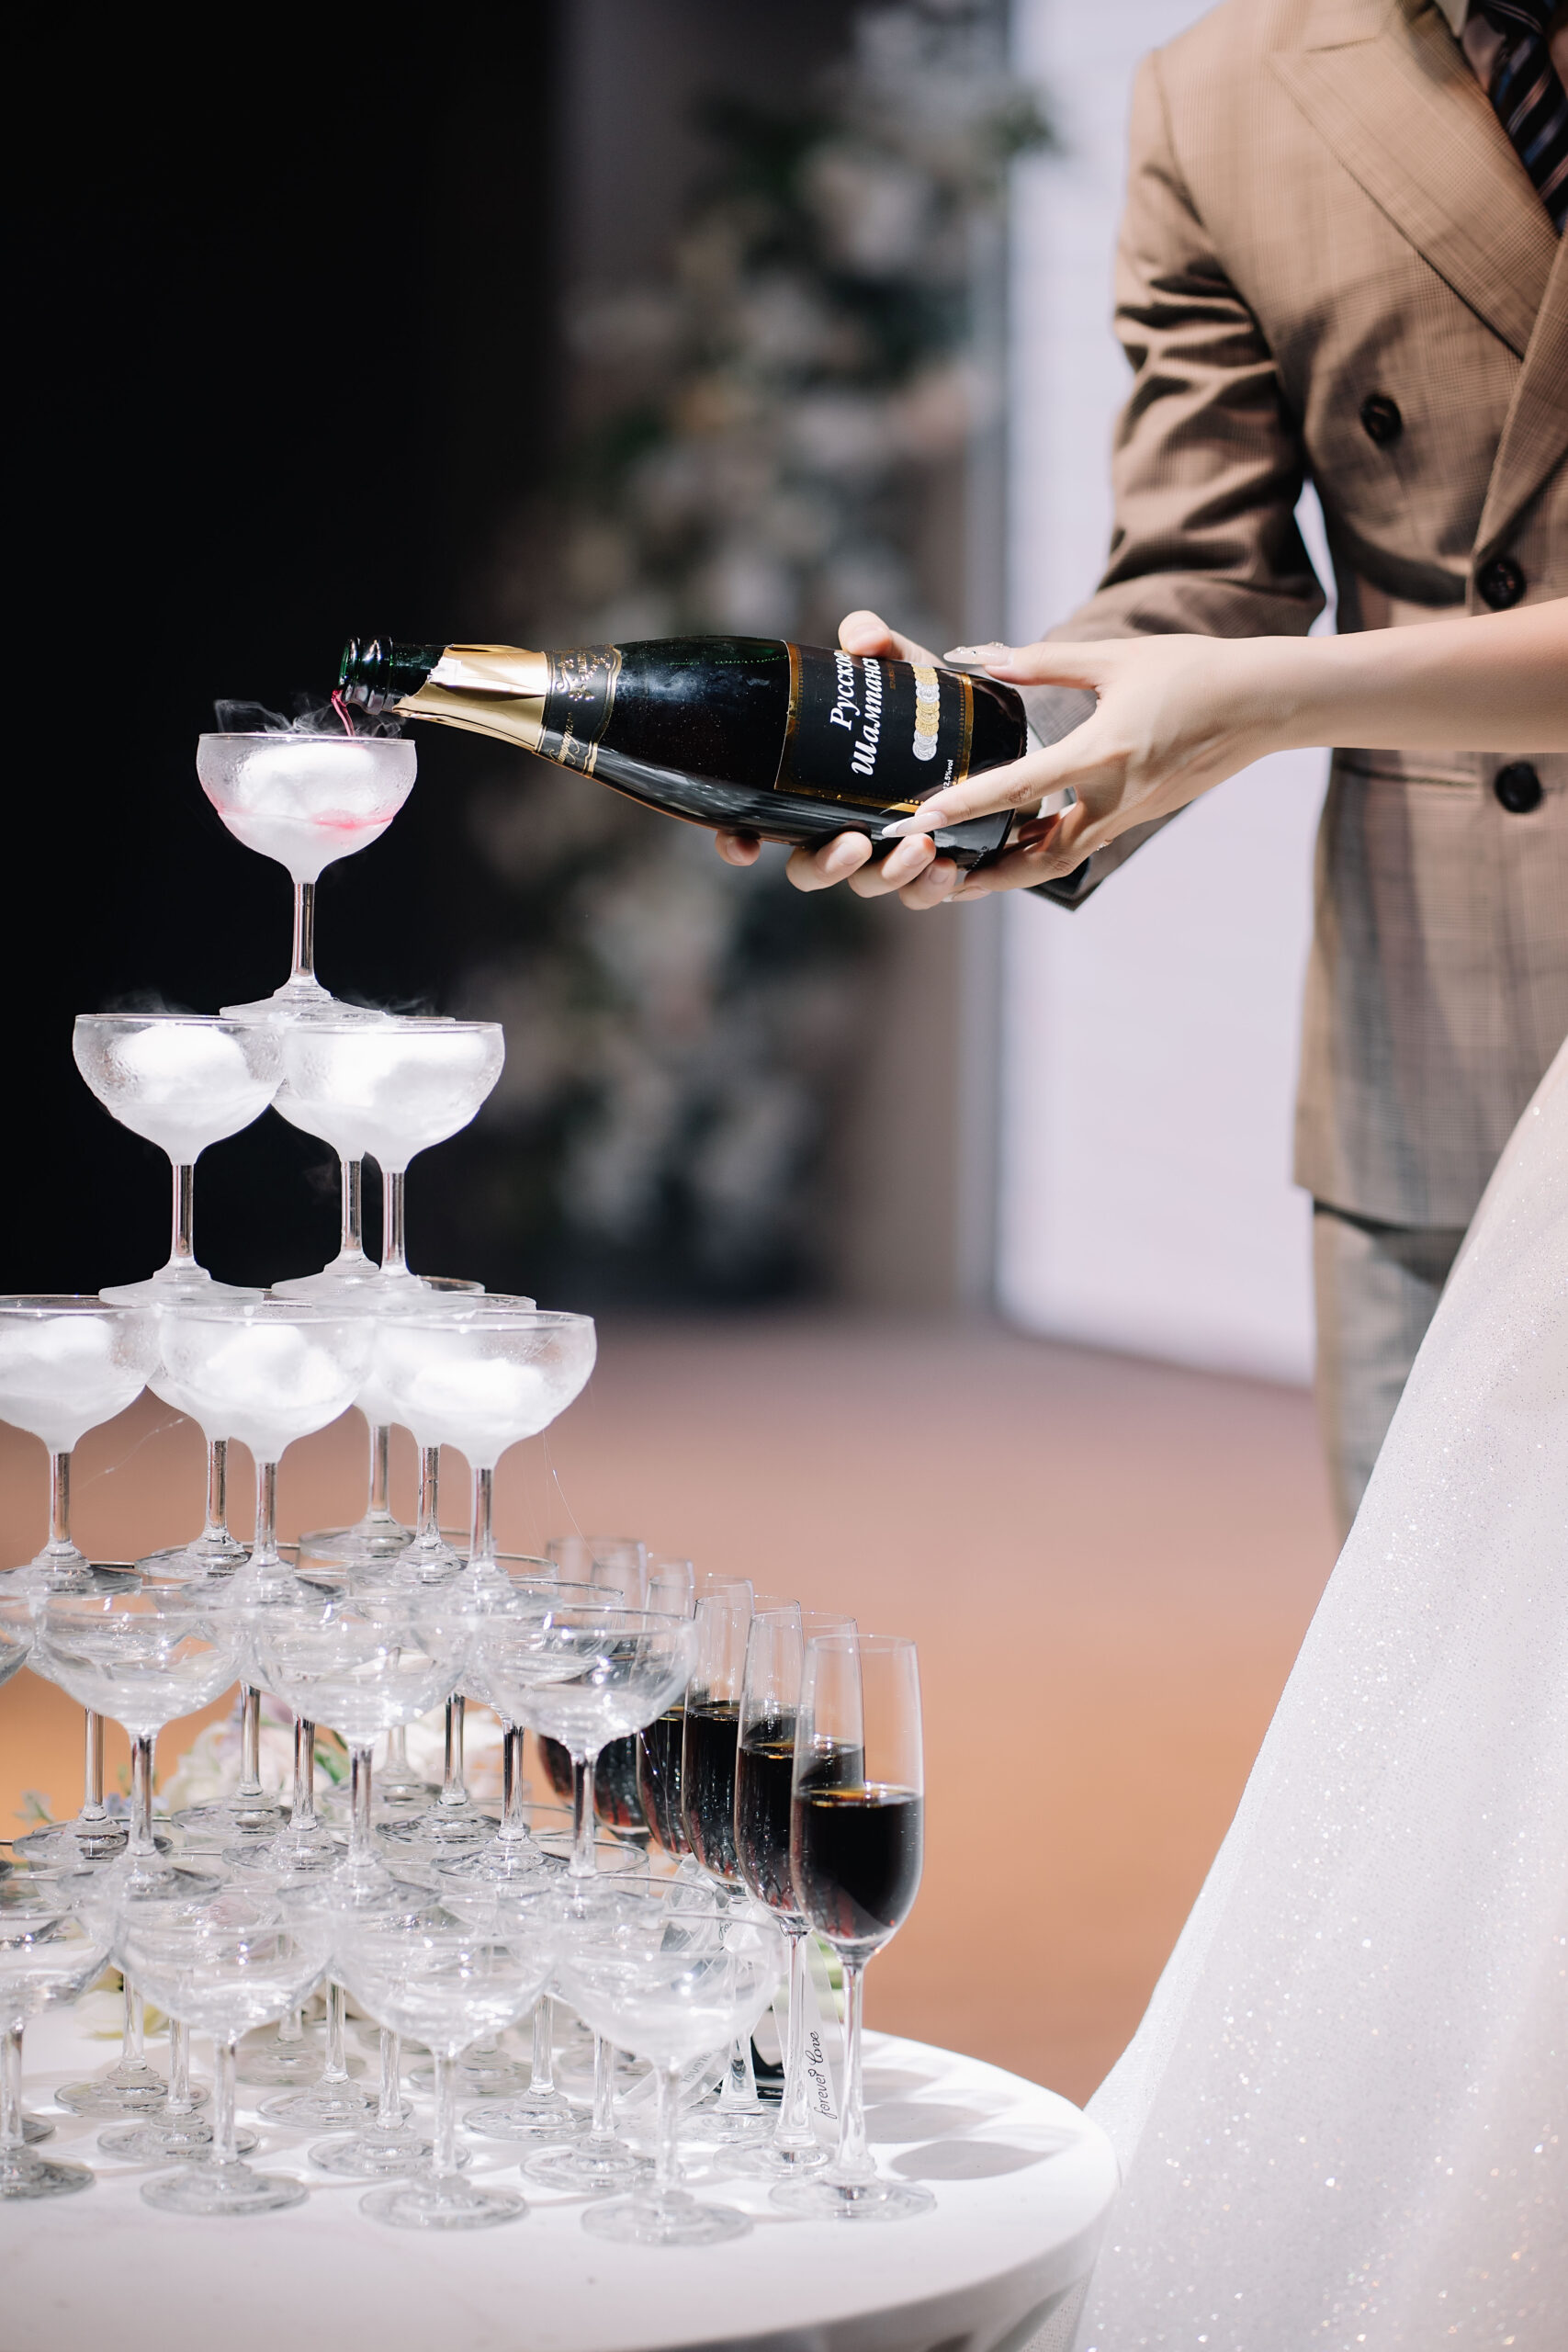 Rượu vang đỏ là đồ uống được ưa chuộng trong các buổi tiệc hay các buổi lễ quan trọng như đám cưới